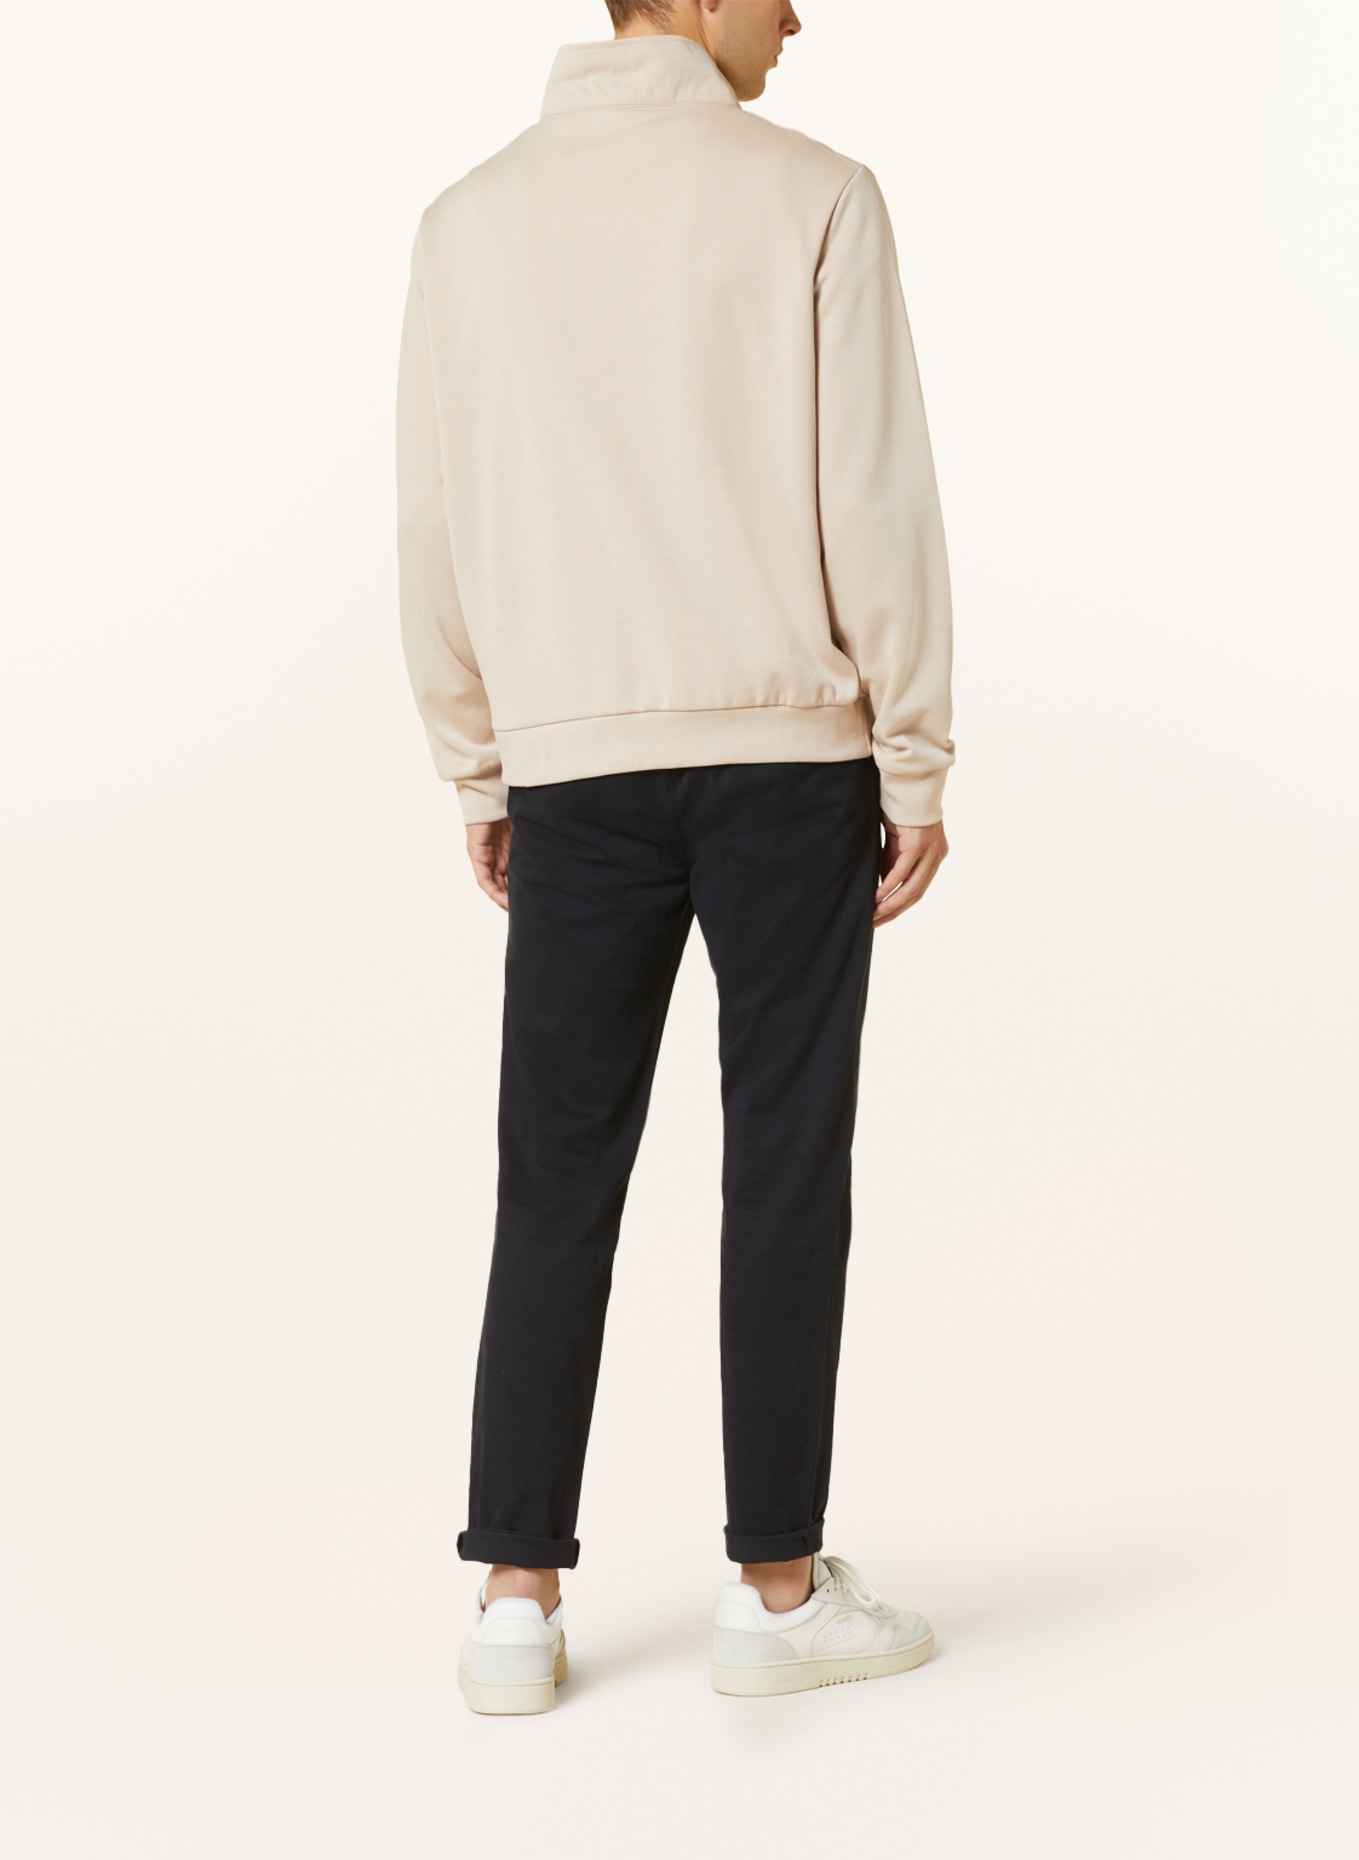 PAUL Jersey half-zip sweater, Color: BEIGE (Image 3)